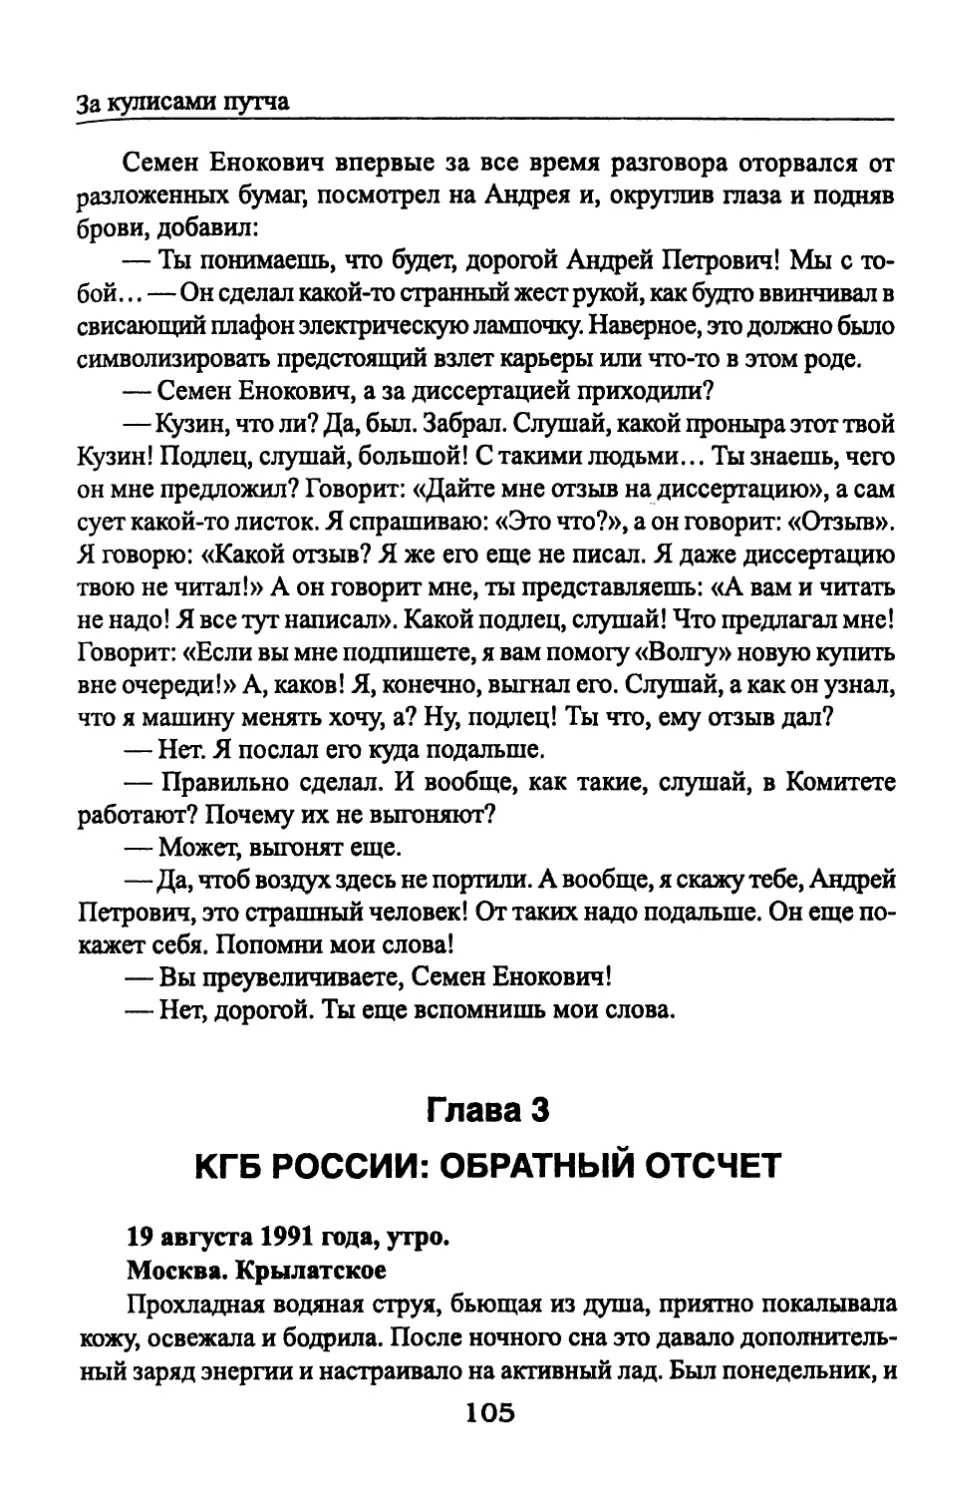 Глава 3. КГБ России: обратный отсчет